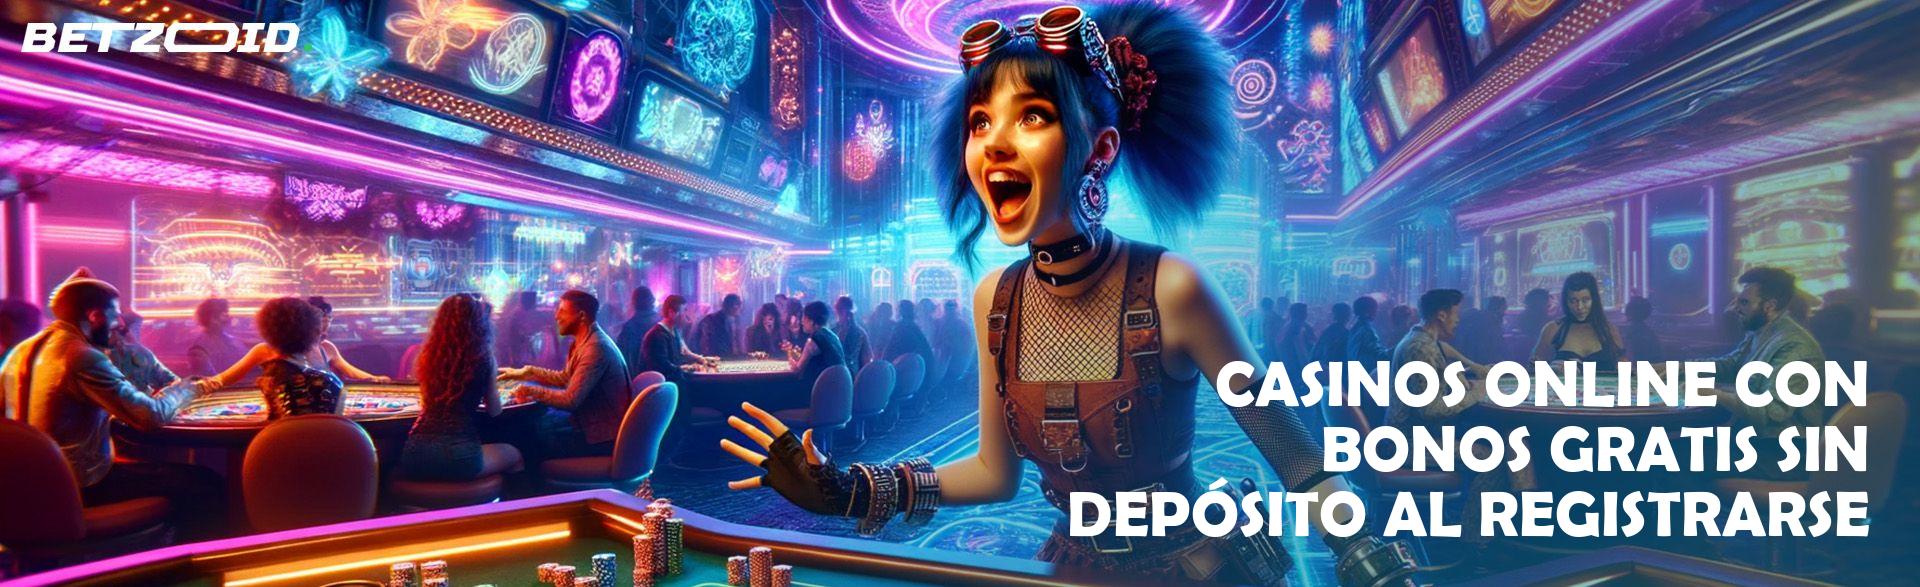 Casinos sin límite de depósito